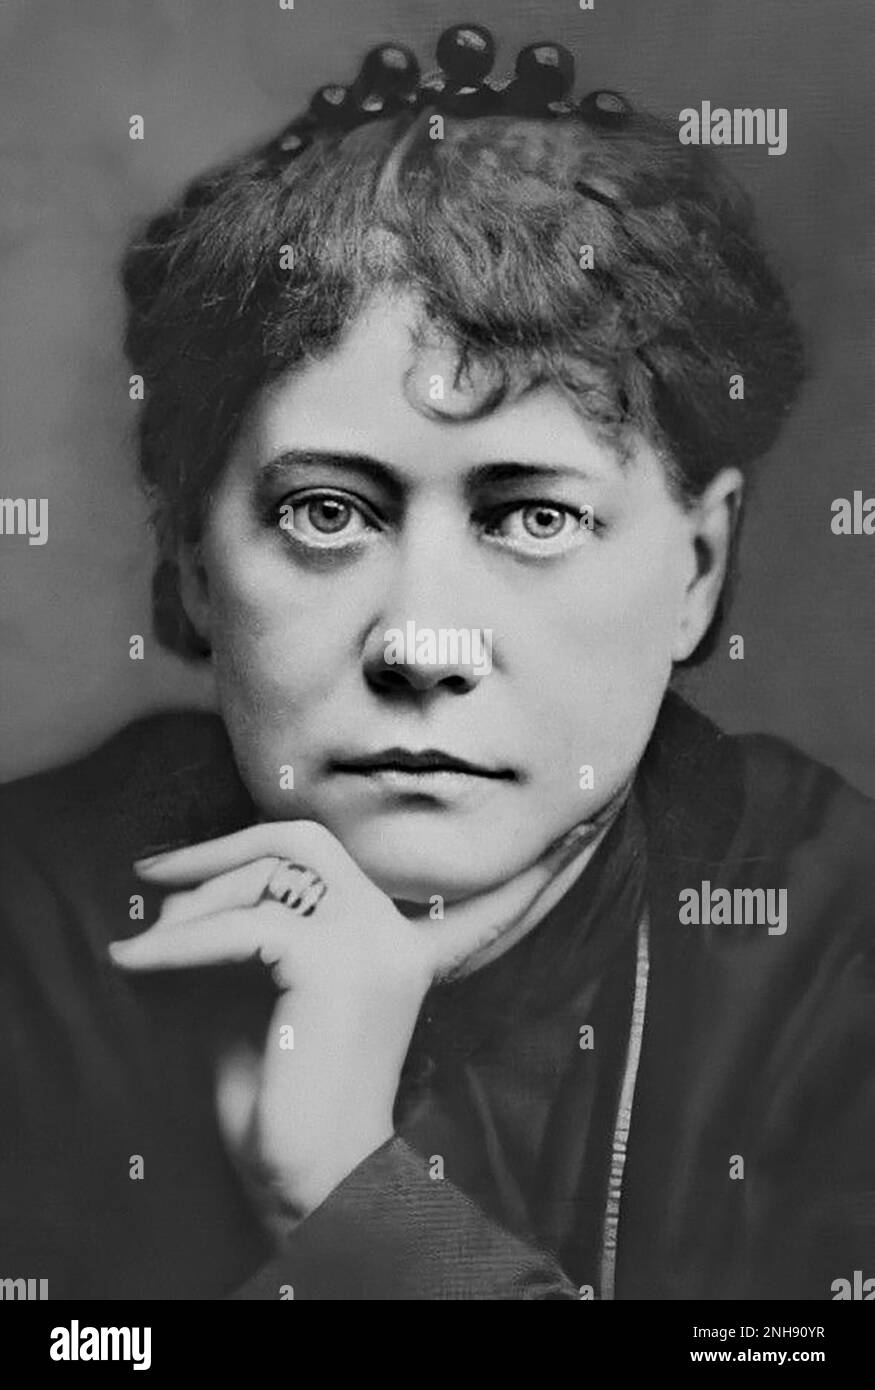 Helena Petrovna Blavatsky, alias Madame Blavatsky (1831-1891) est une écrivaine russe qui a co-fondé la Société théosophique en 1875. Elle a obtenu une suite internationale en tant que théoricienne principale de la théosophie. La théosophie est un mouvement ésotérique qui tire ses enseignements des écrits de Blavatsky et de la littérature ésotérique influencée par le néoplatonisme, l'hindouisme et le bouddhisme. Parmi les personnes éminentes impliquées dans le mouvement, on compte Thomas Edison, Alfred Russel Wallace, William Crookes, Hilma af Klint, Wassily Kandinsky, Piet Mondrian, et William Butler Yeats, pour n'en nommer que quelques-uns. Banque D'Images